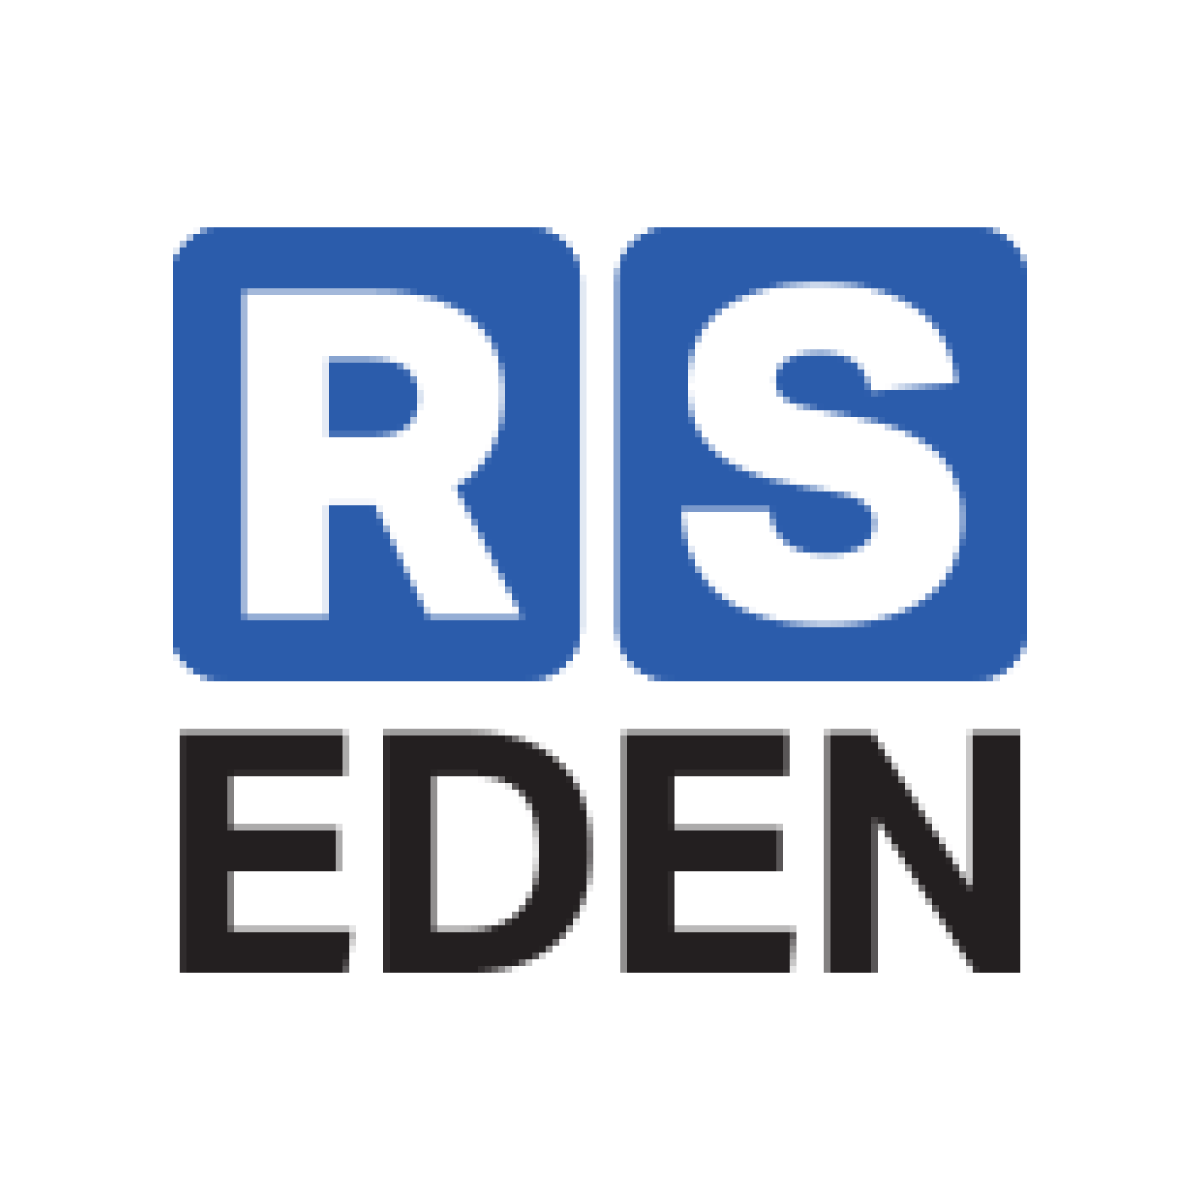 Programa para mujeres de RS Eden
rseden.org 